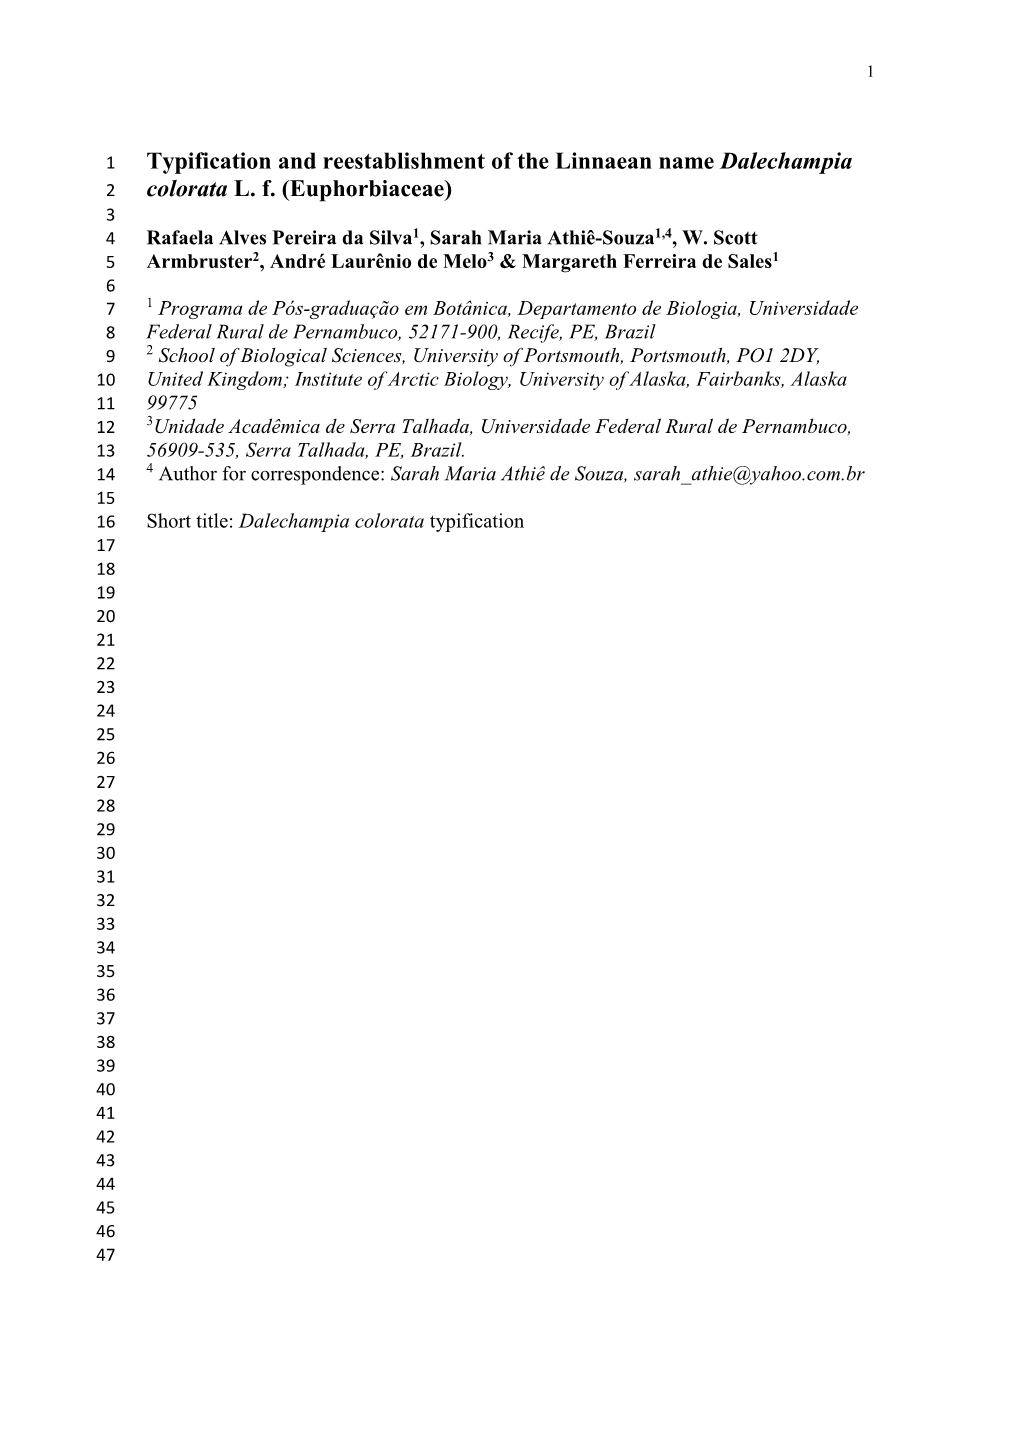 Typification and Reestablishment of the Linnaean Name Dalechampia 2 Colorata L